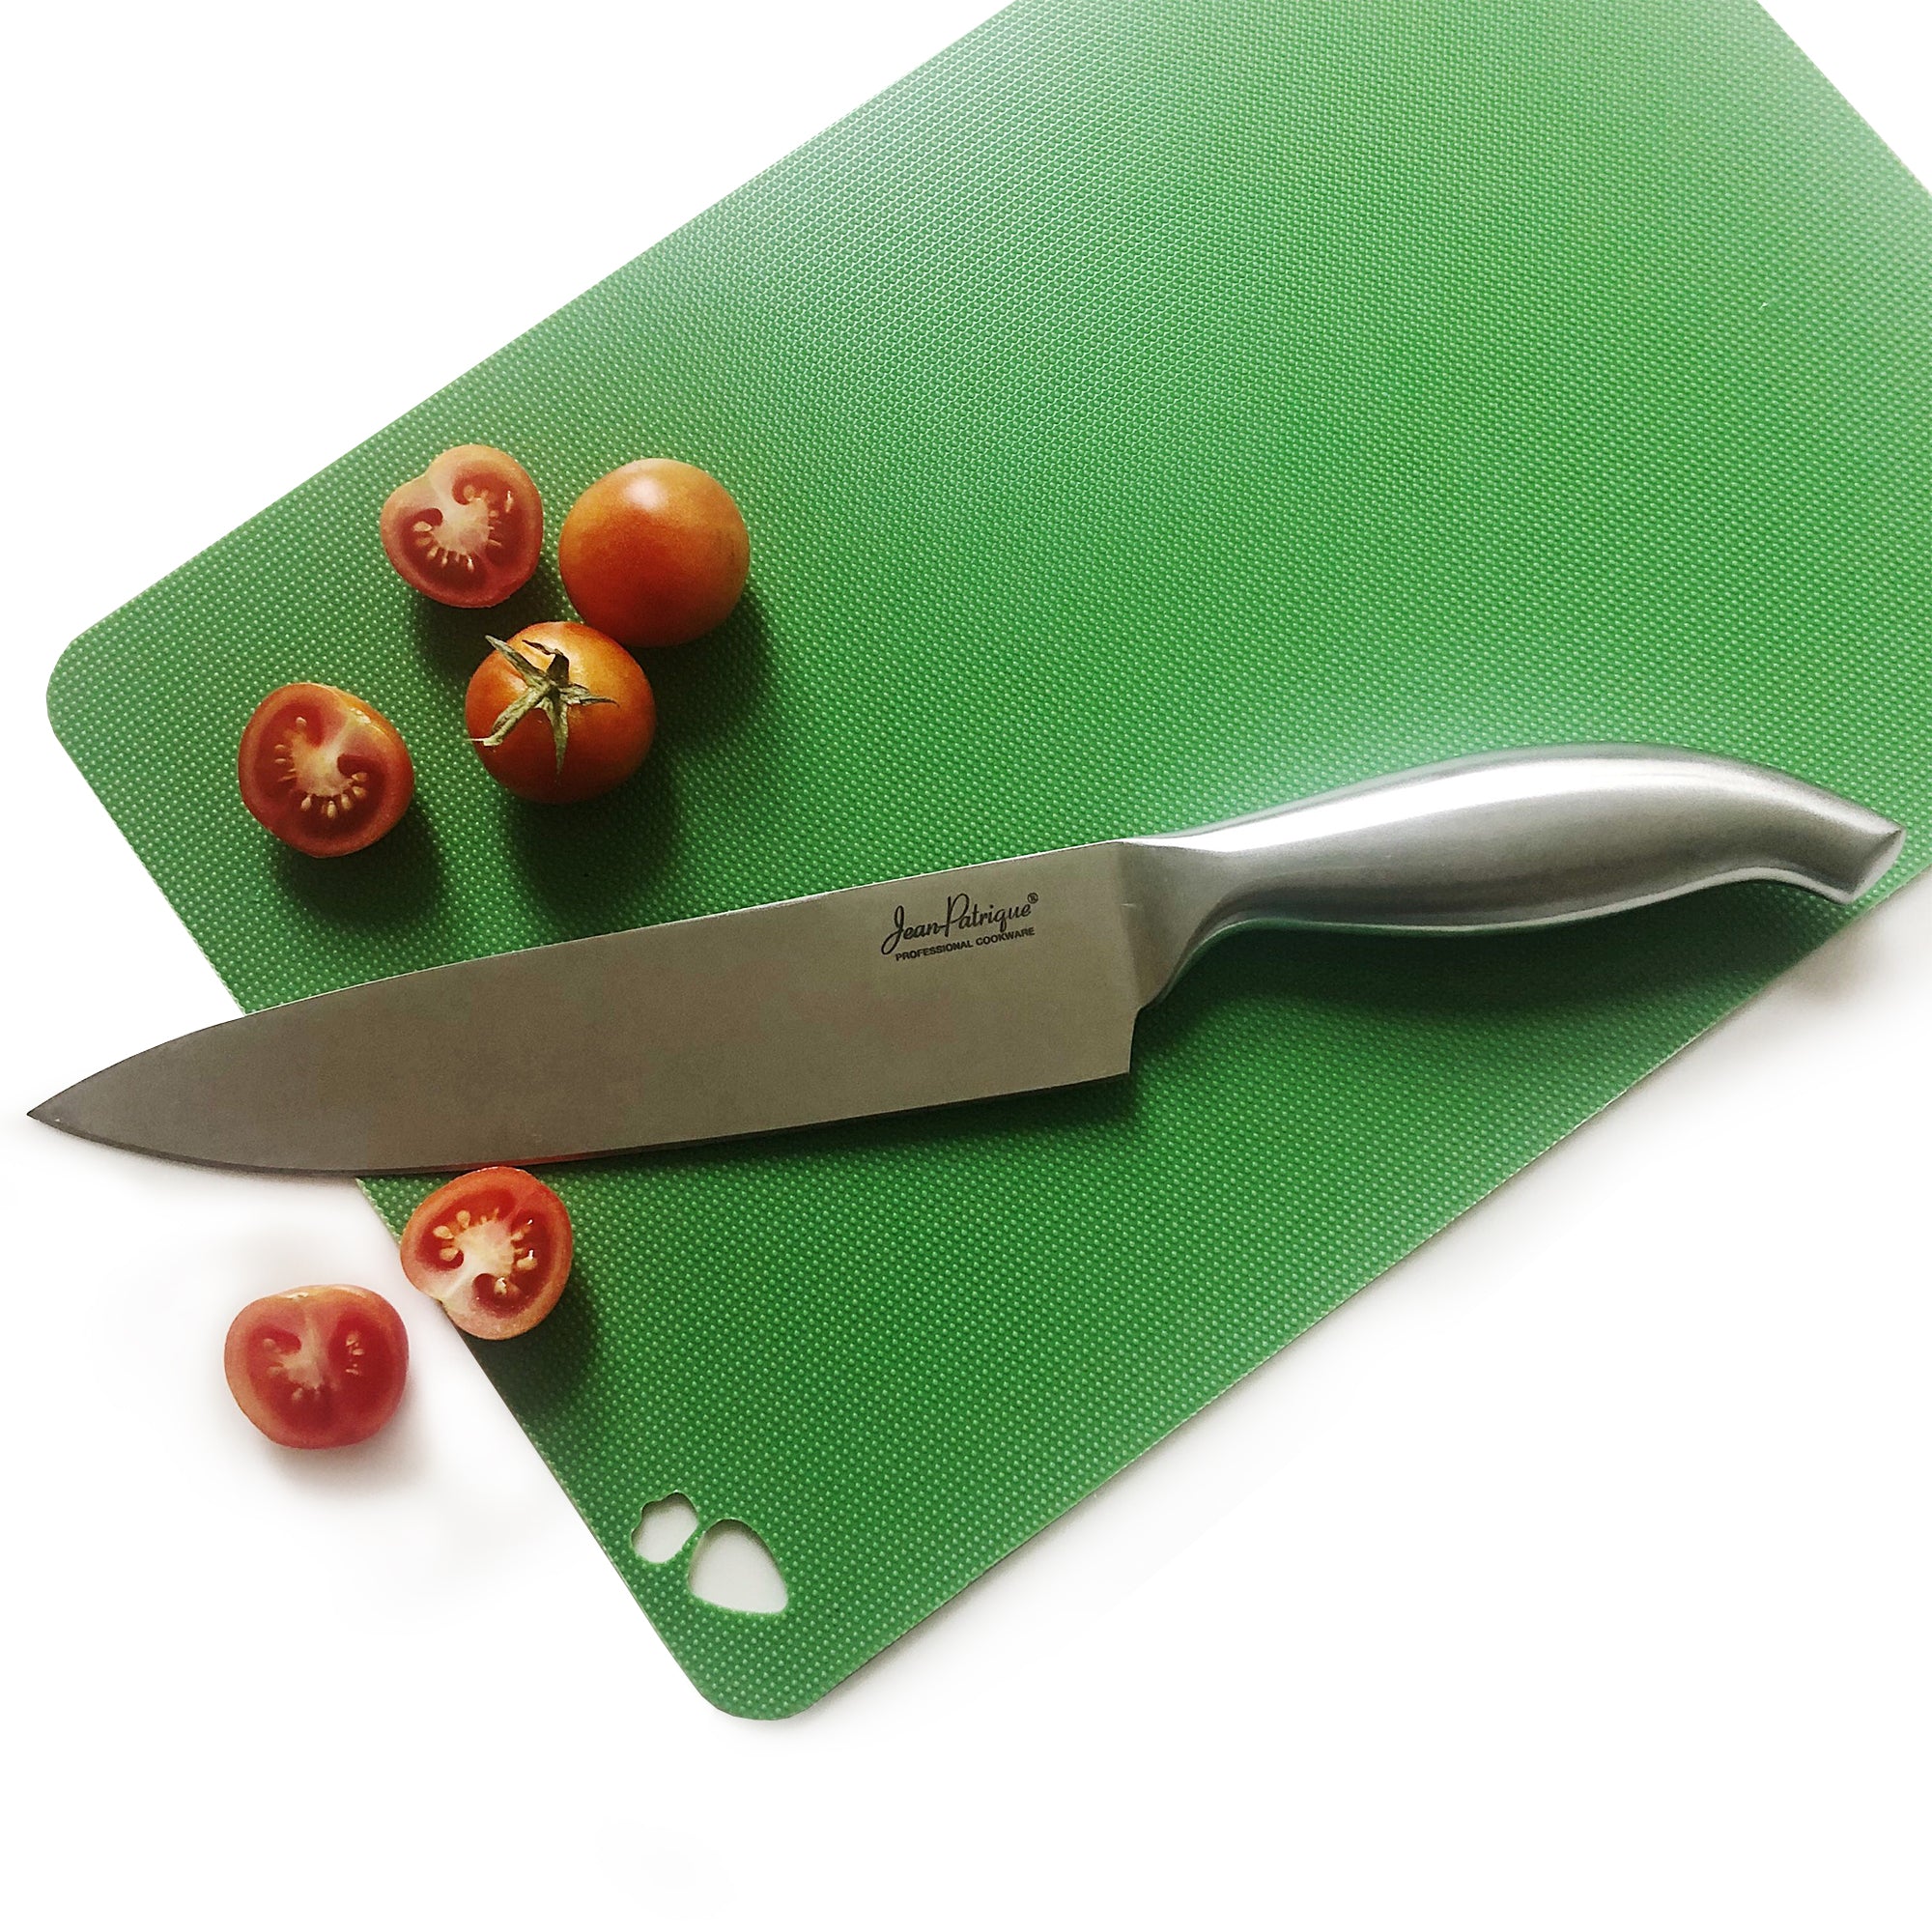 Jean-Patrique Chopaholic 6 Chef's Knife JP0043US